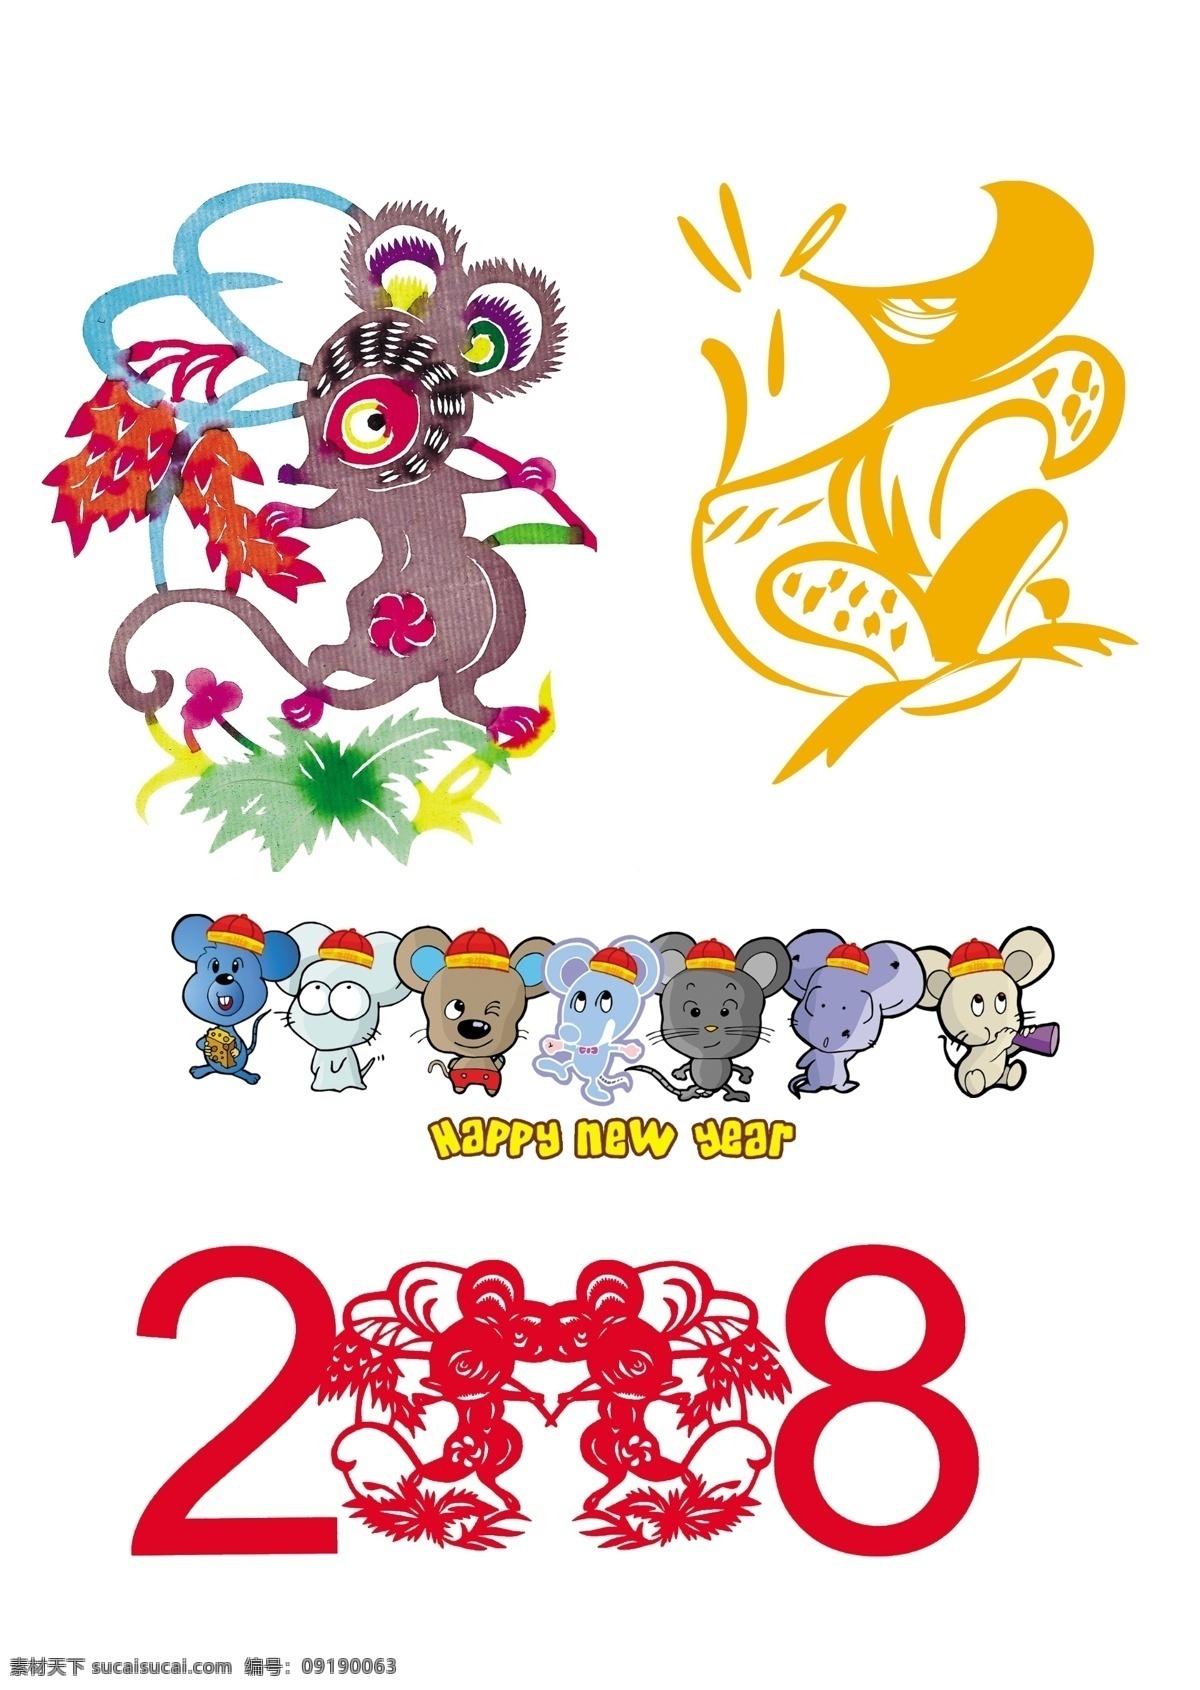 鼠年 贺卡 喜庆 模板 新年 文化艺术 节日庆祝 贺卡模板 矢量图库